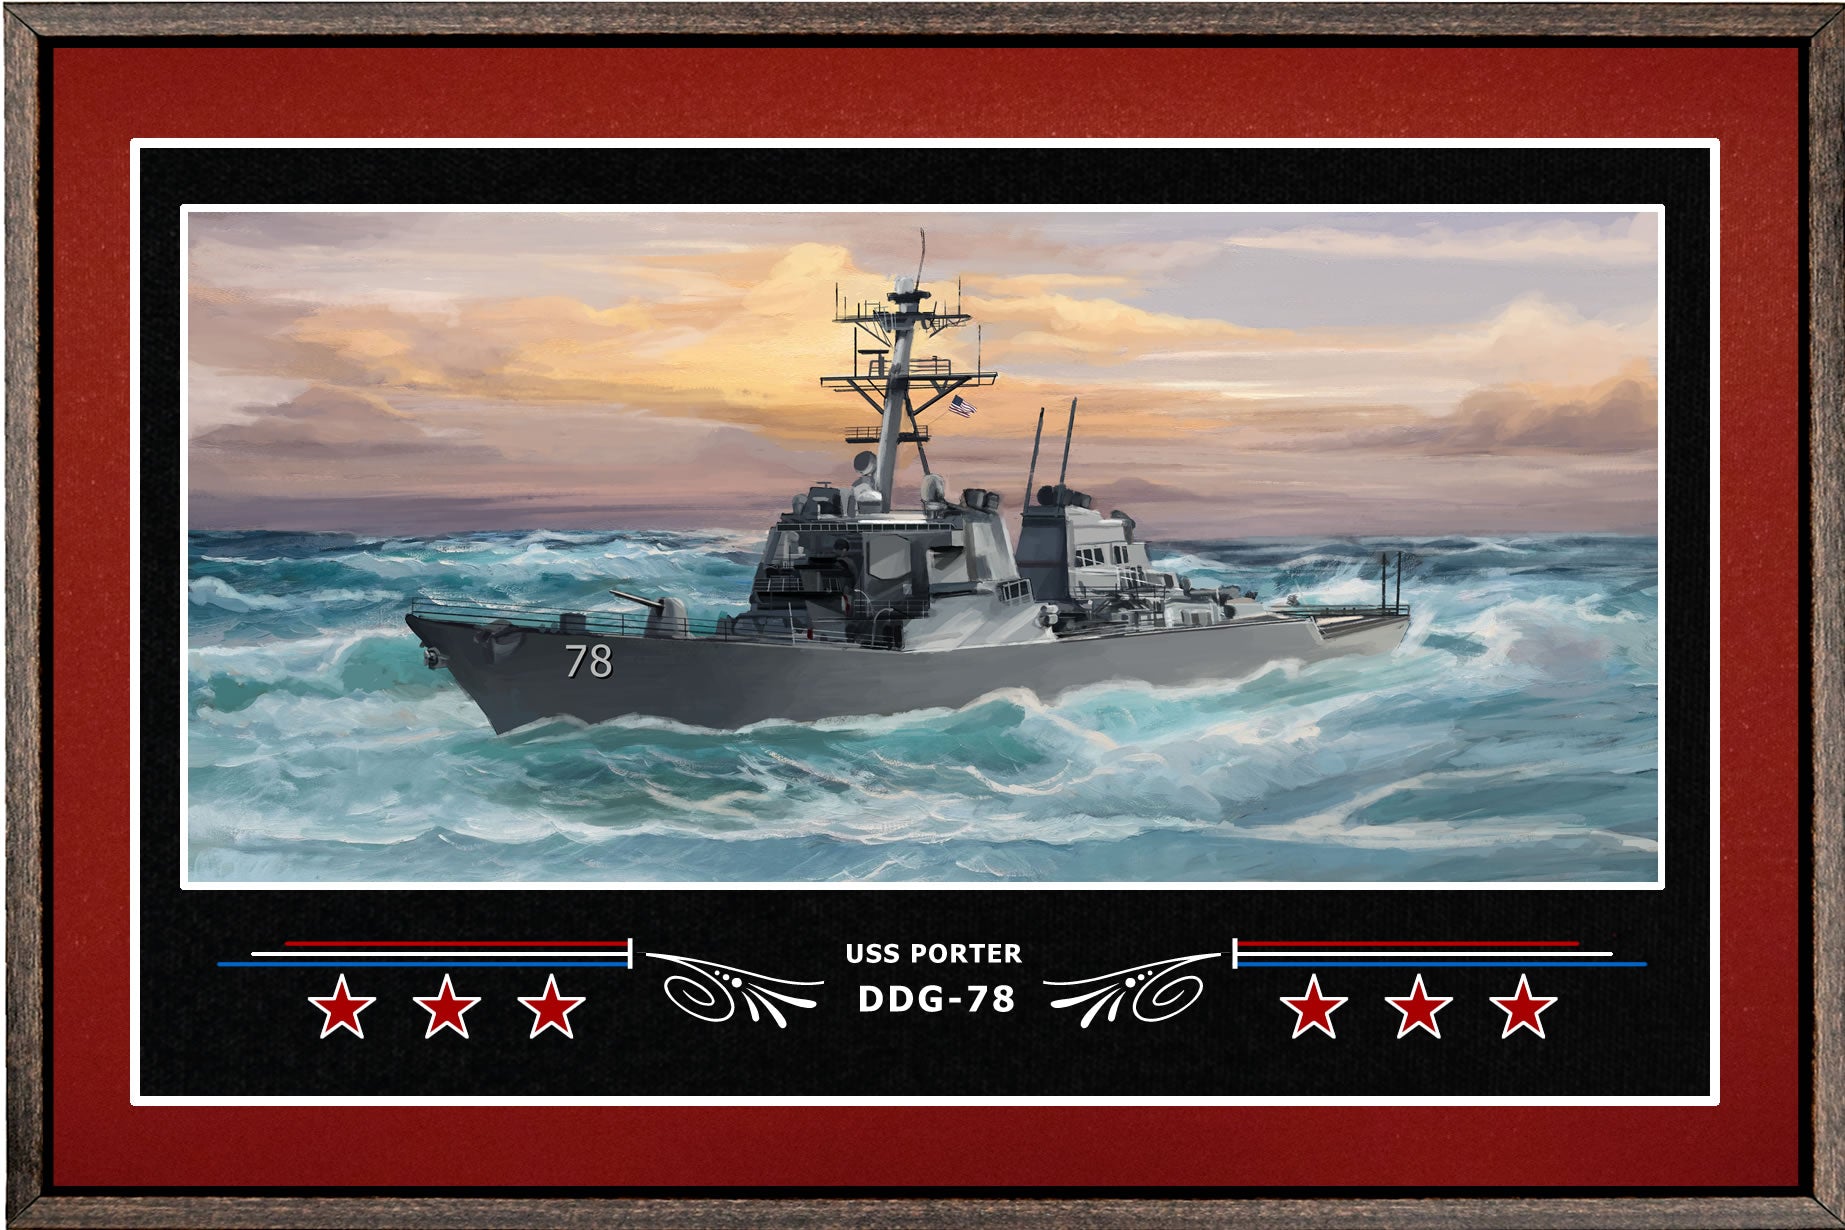 USS PORTER DDG 78 BOX FRAMED CANVAS ART BURGUNDY